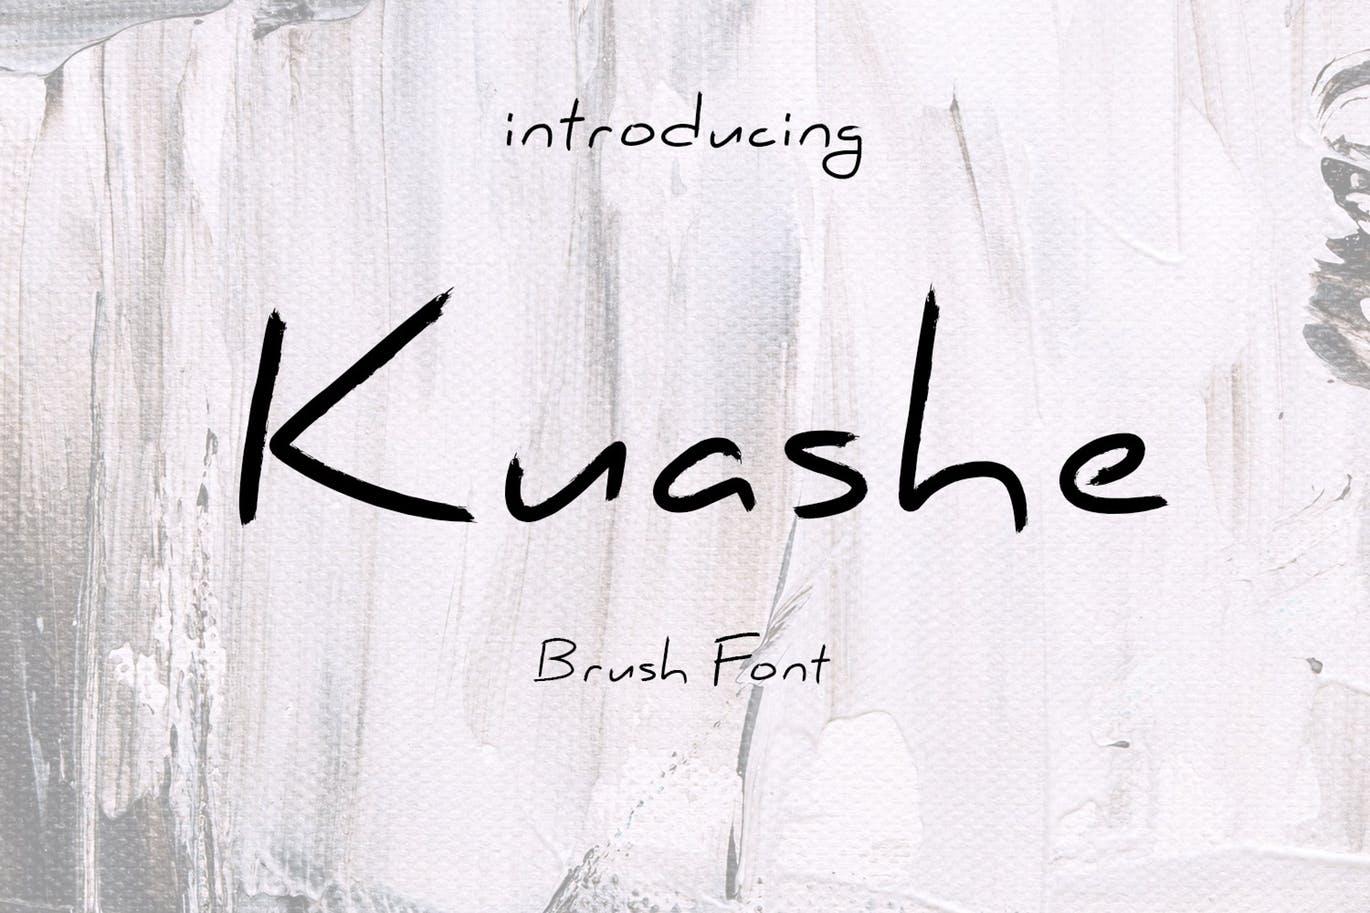 英文手写笔刷字体下载 Kuashe Font插图